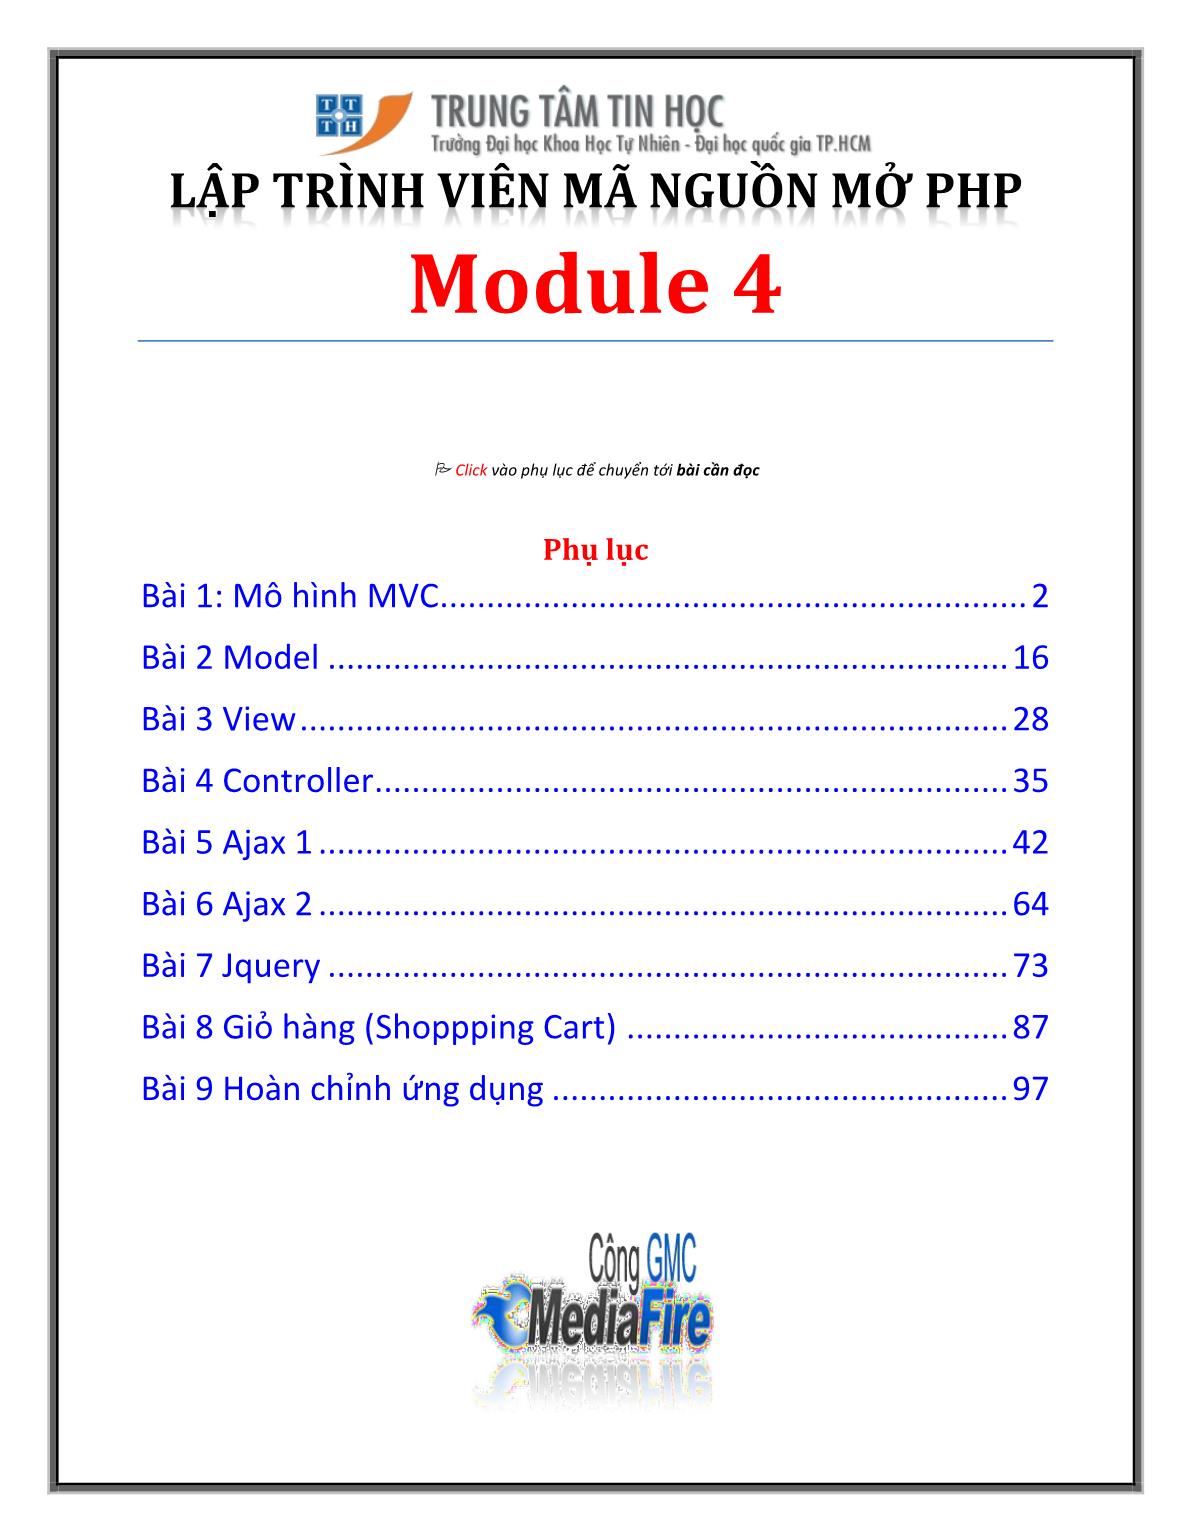 Bài giảng Lập trình viên mã nguồn mở PHP - Module 4, Bài 1: Mô hình MVC - Trường Đại học Khoa học tự nhiên - Đại học Quốc gia TP Hồ Chí Minh trang 1